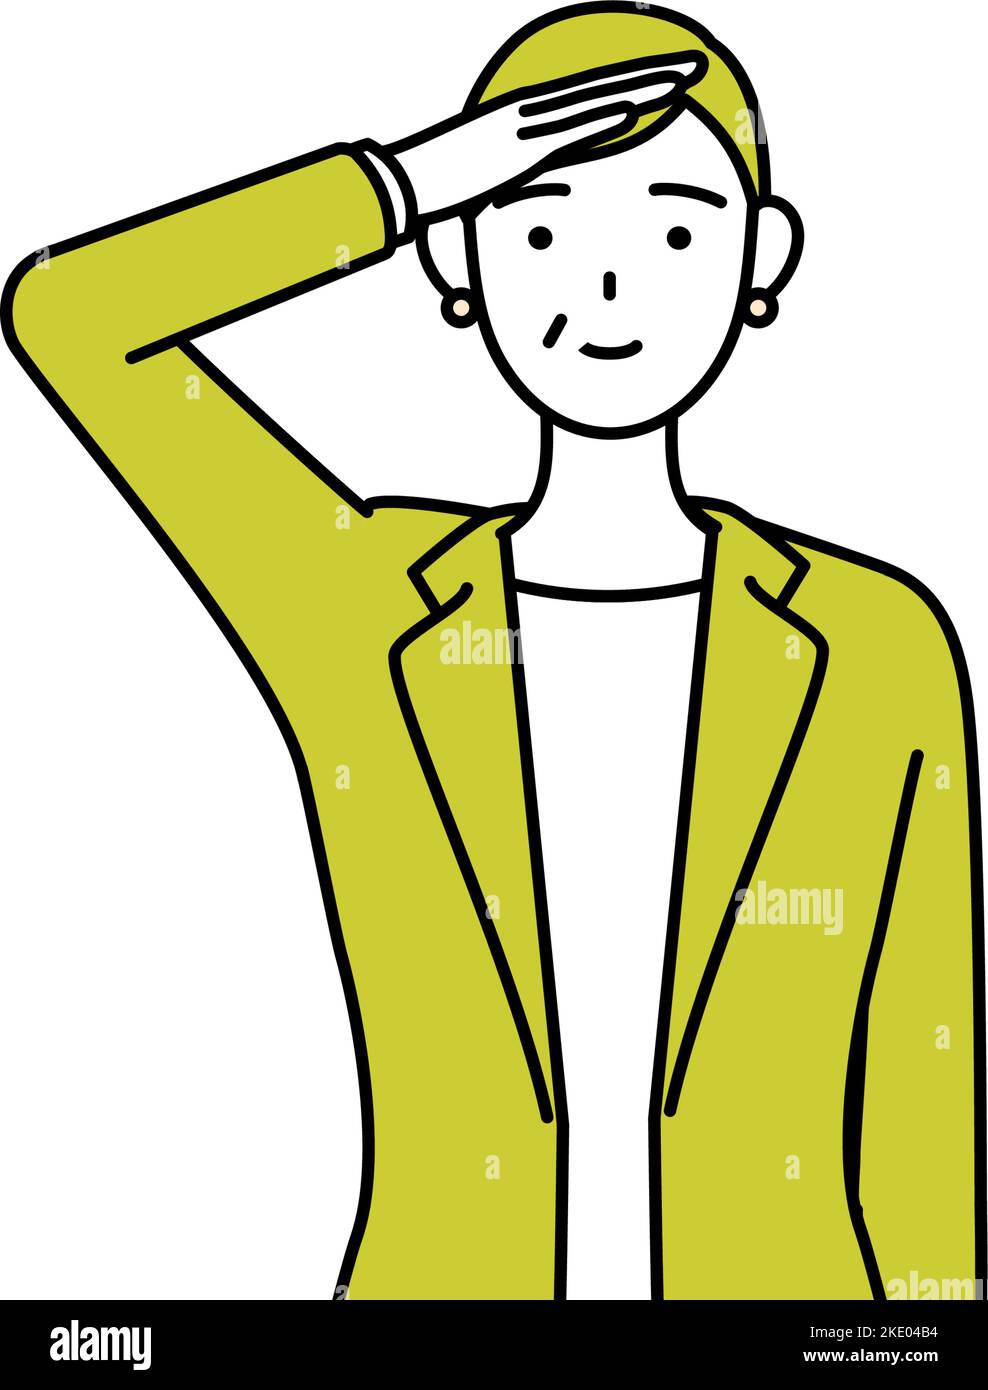 Illustration simple de dessin de ligne d'une femme senior en costume, femme gestionnaire, femme de carrière faisant un salut. Illustration de Vecteur